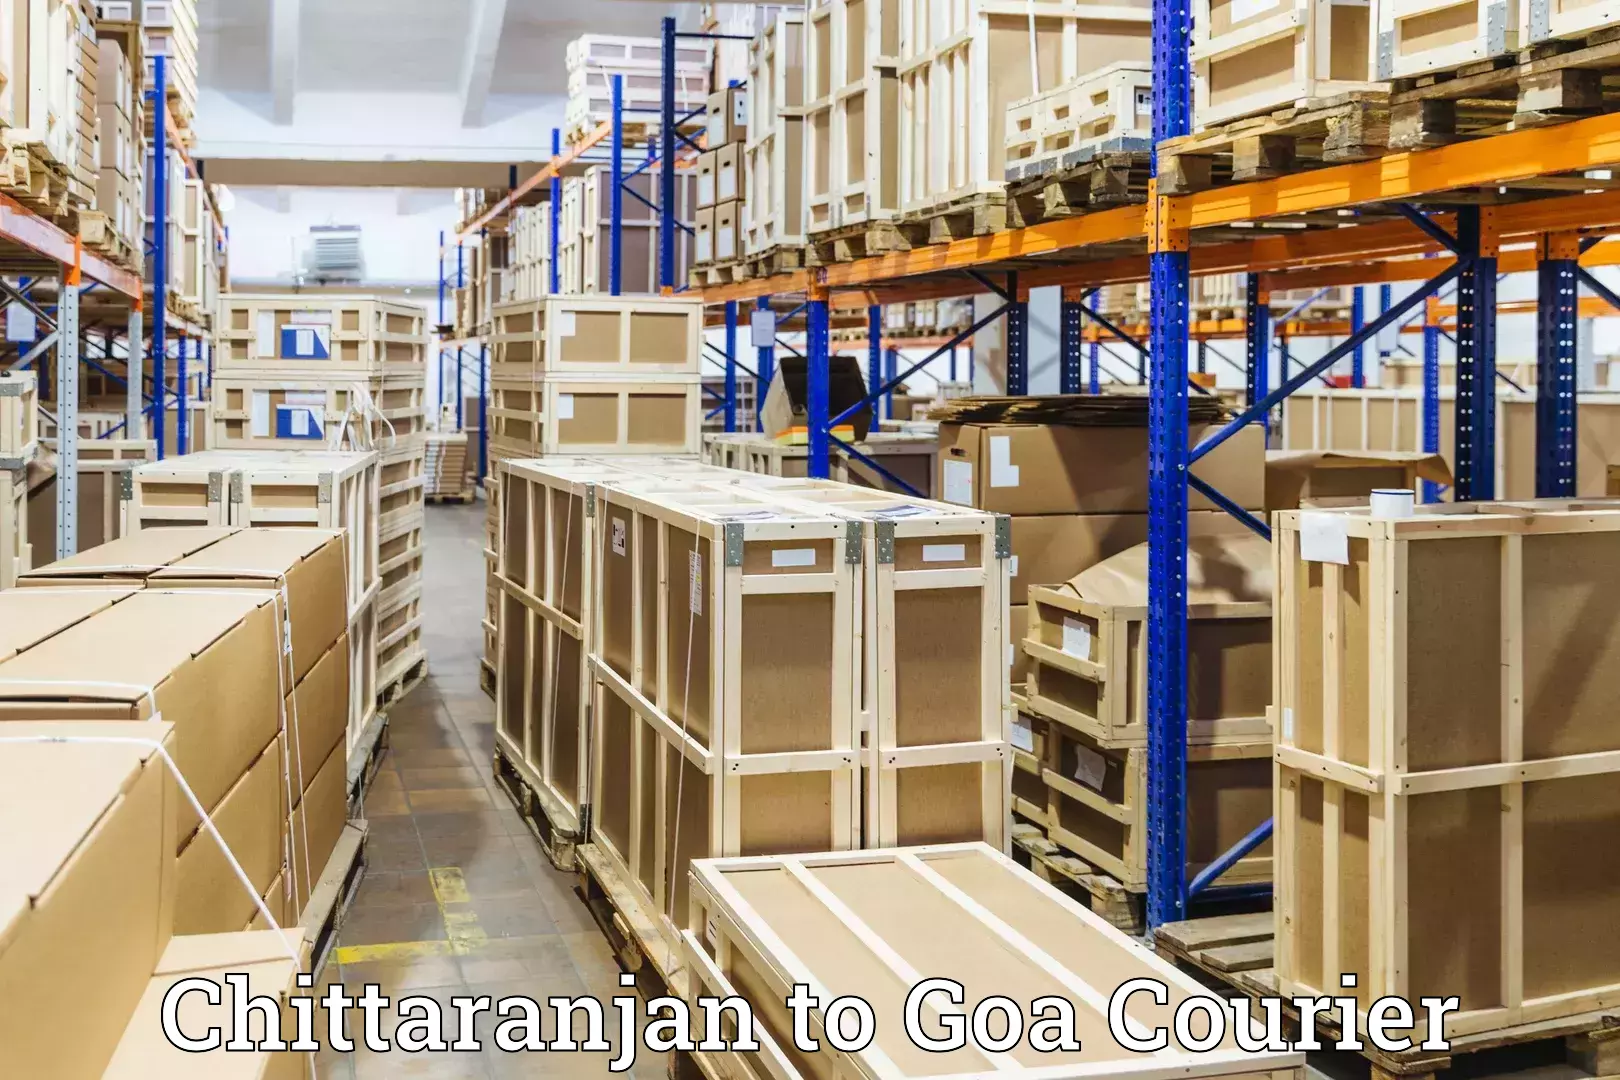 Luggage shipment tracking Chittaranjan to Goa University